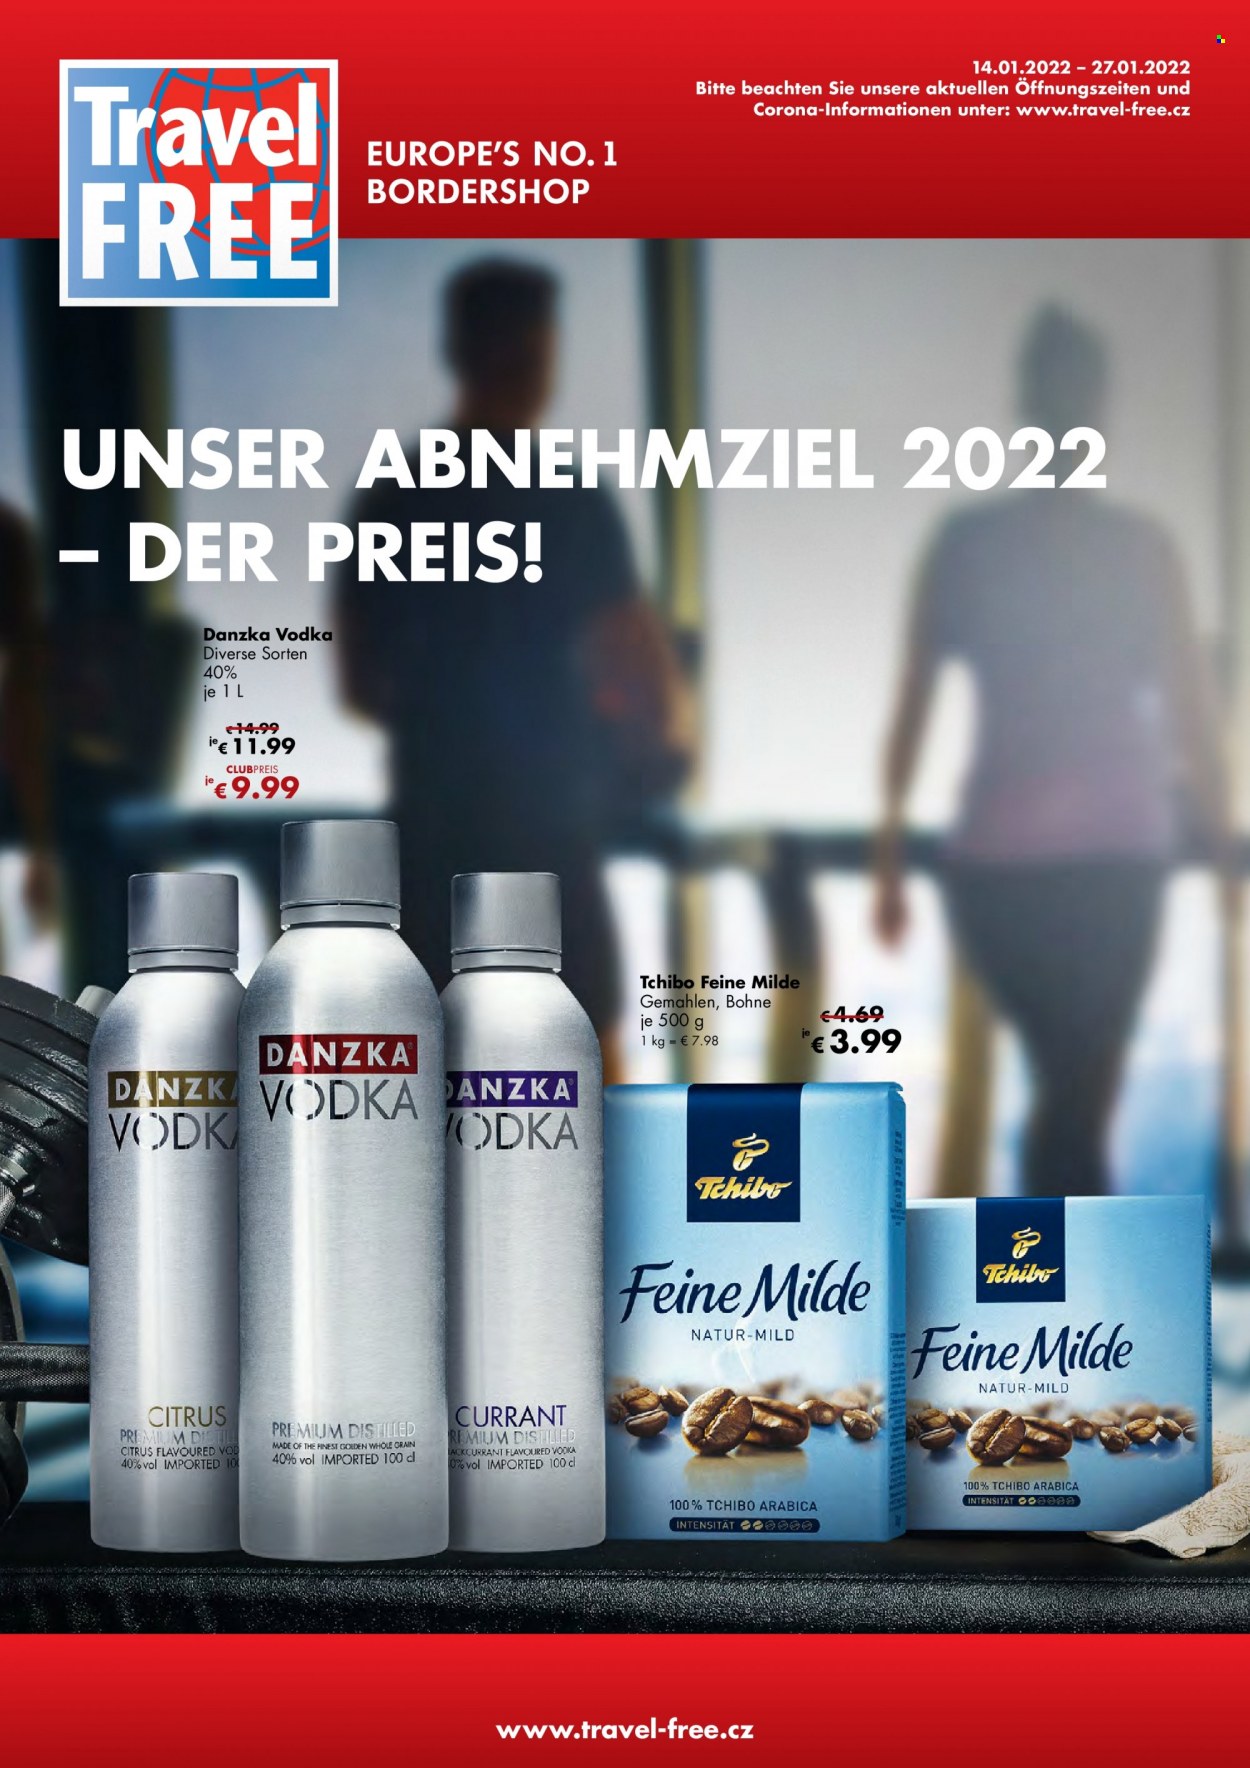 Prospekte Travel FREE - 14.01.2022 - 27.01.2022 - Produkte in Aktion - Corona, Bier, Alkohol, Kaffee, Tchibo, Vodka. Seite 1.